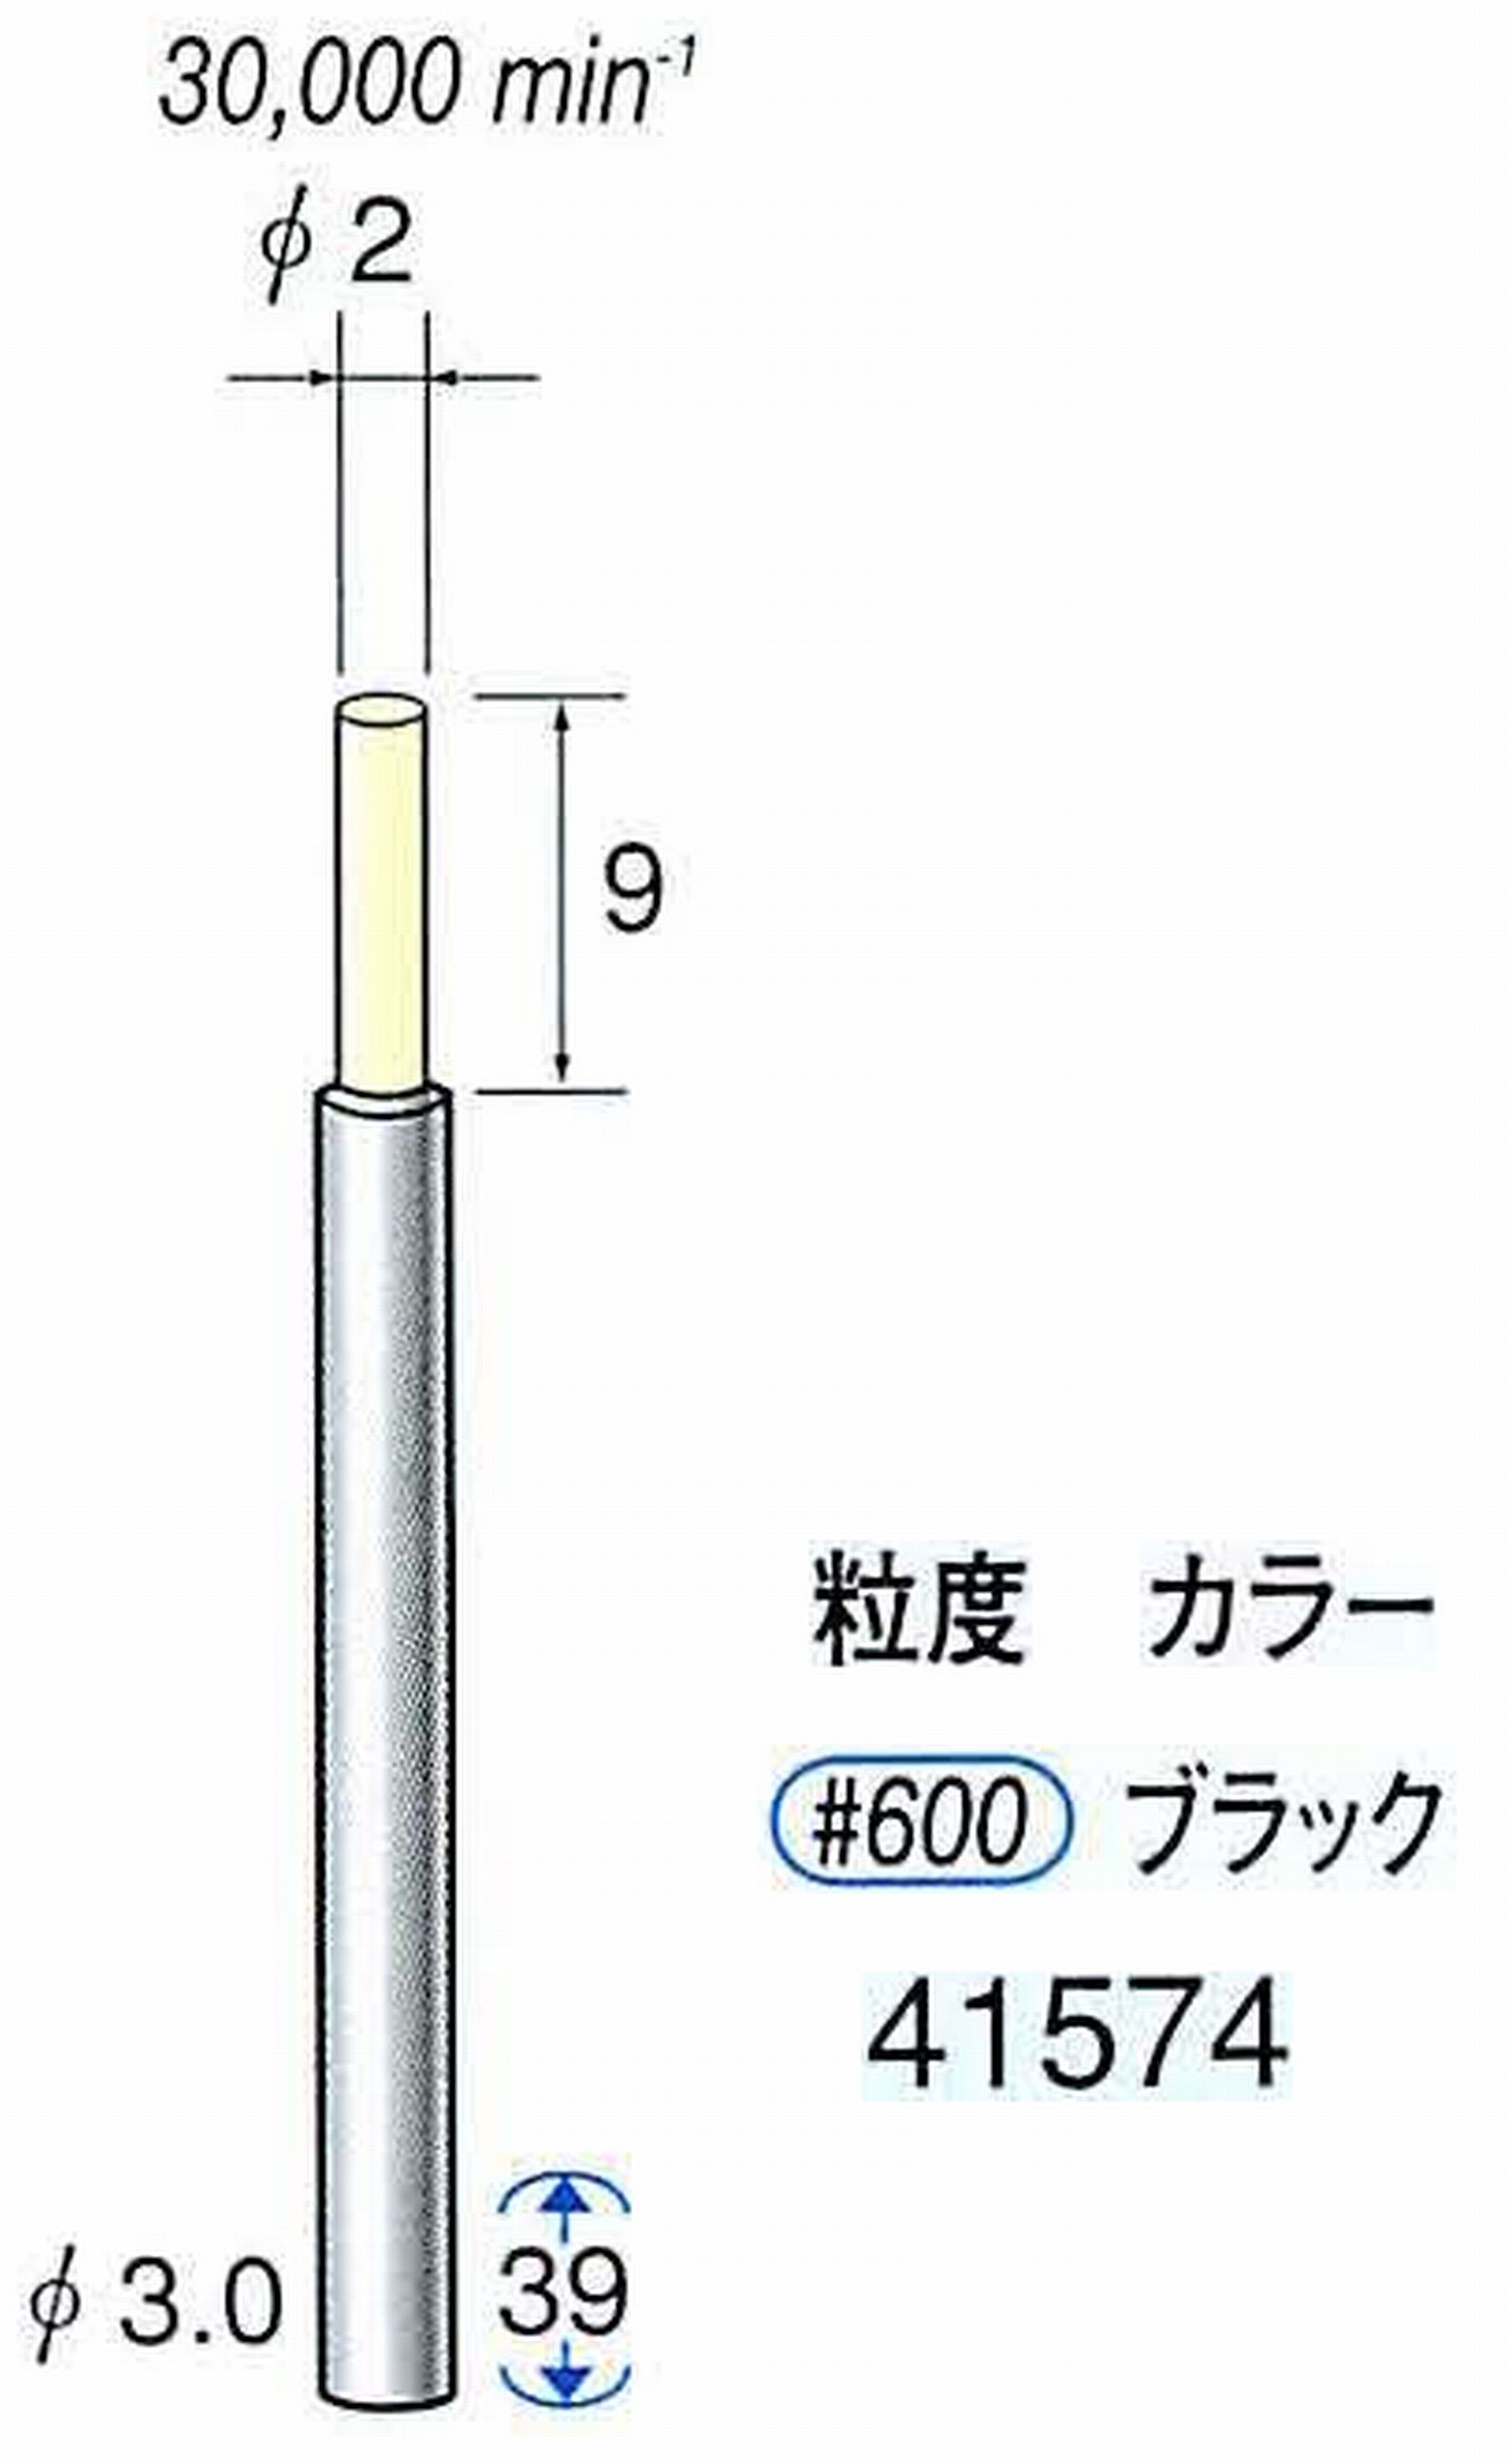 ナカニシ/NAKANISHI セラファイバー精密軸付砥石(カラー ブラック) 軸径(シャンク) φ3.0mm 41574